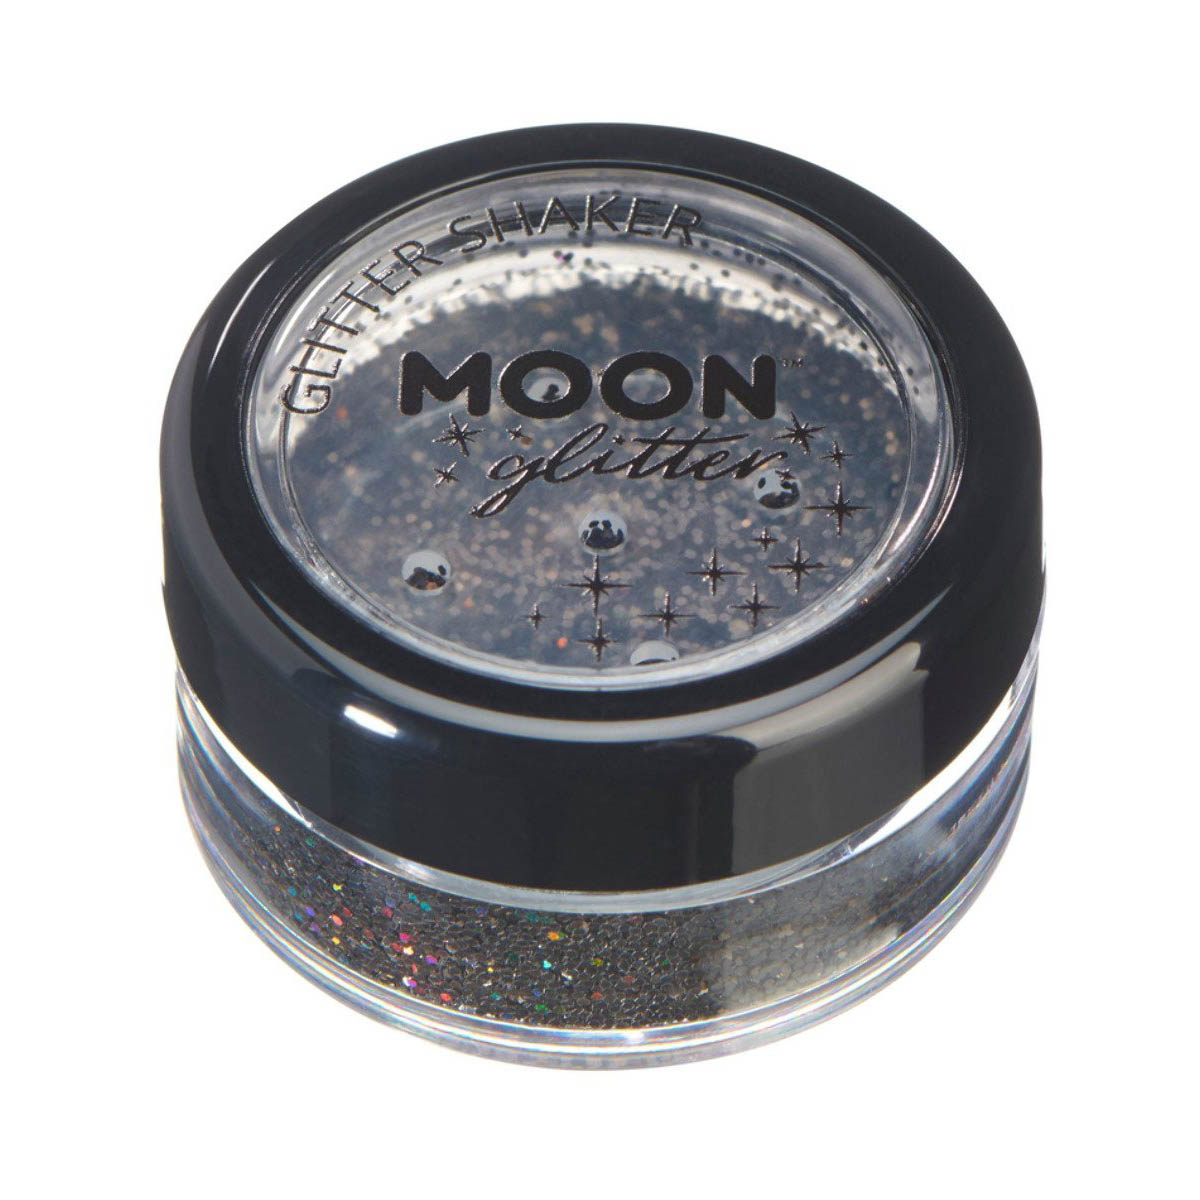 Moon glitter i shaker burk holografisk 5g Svart